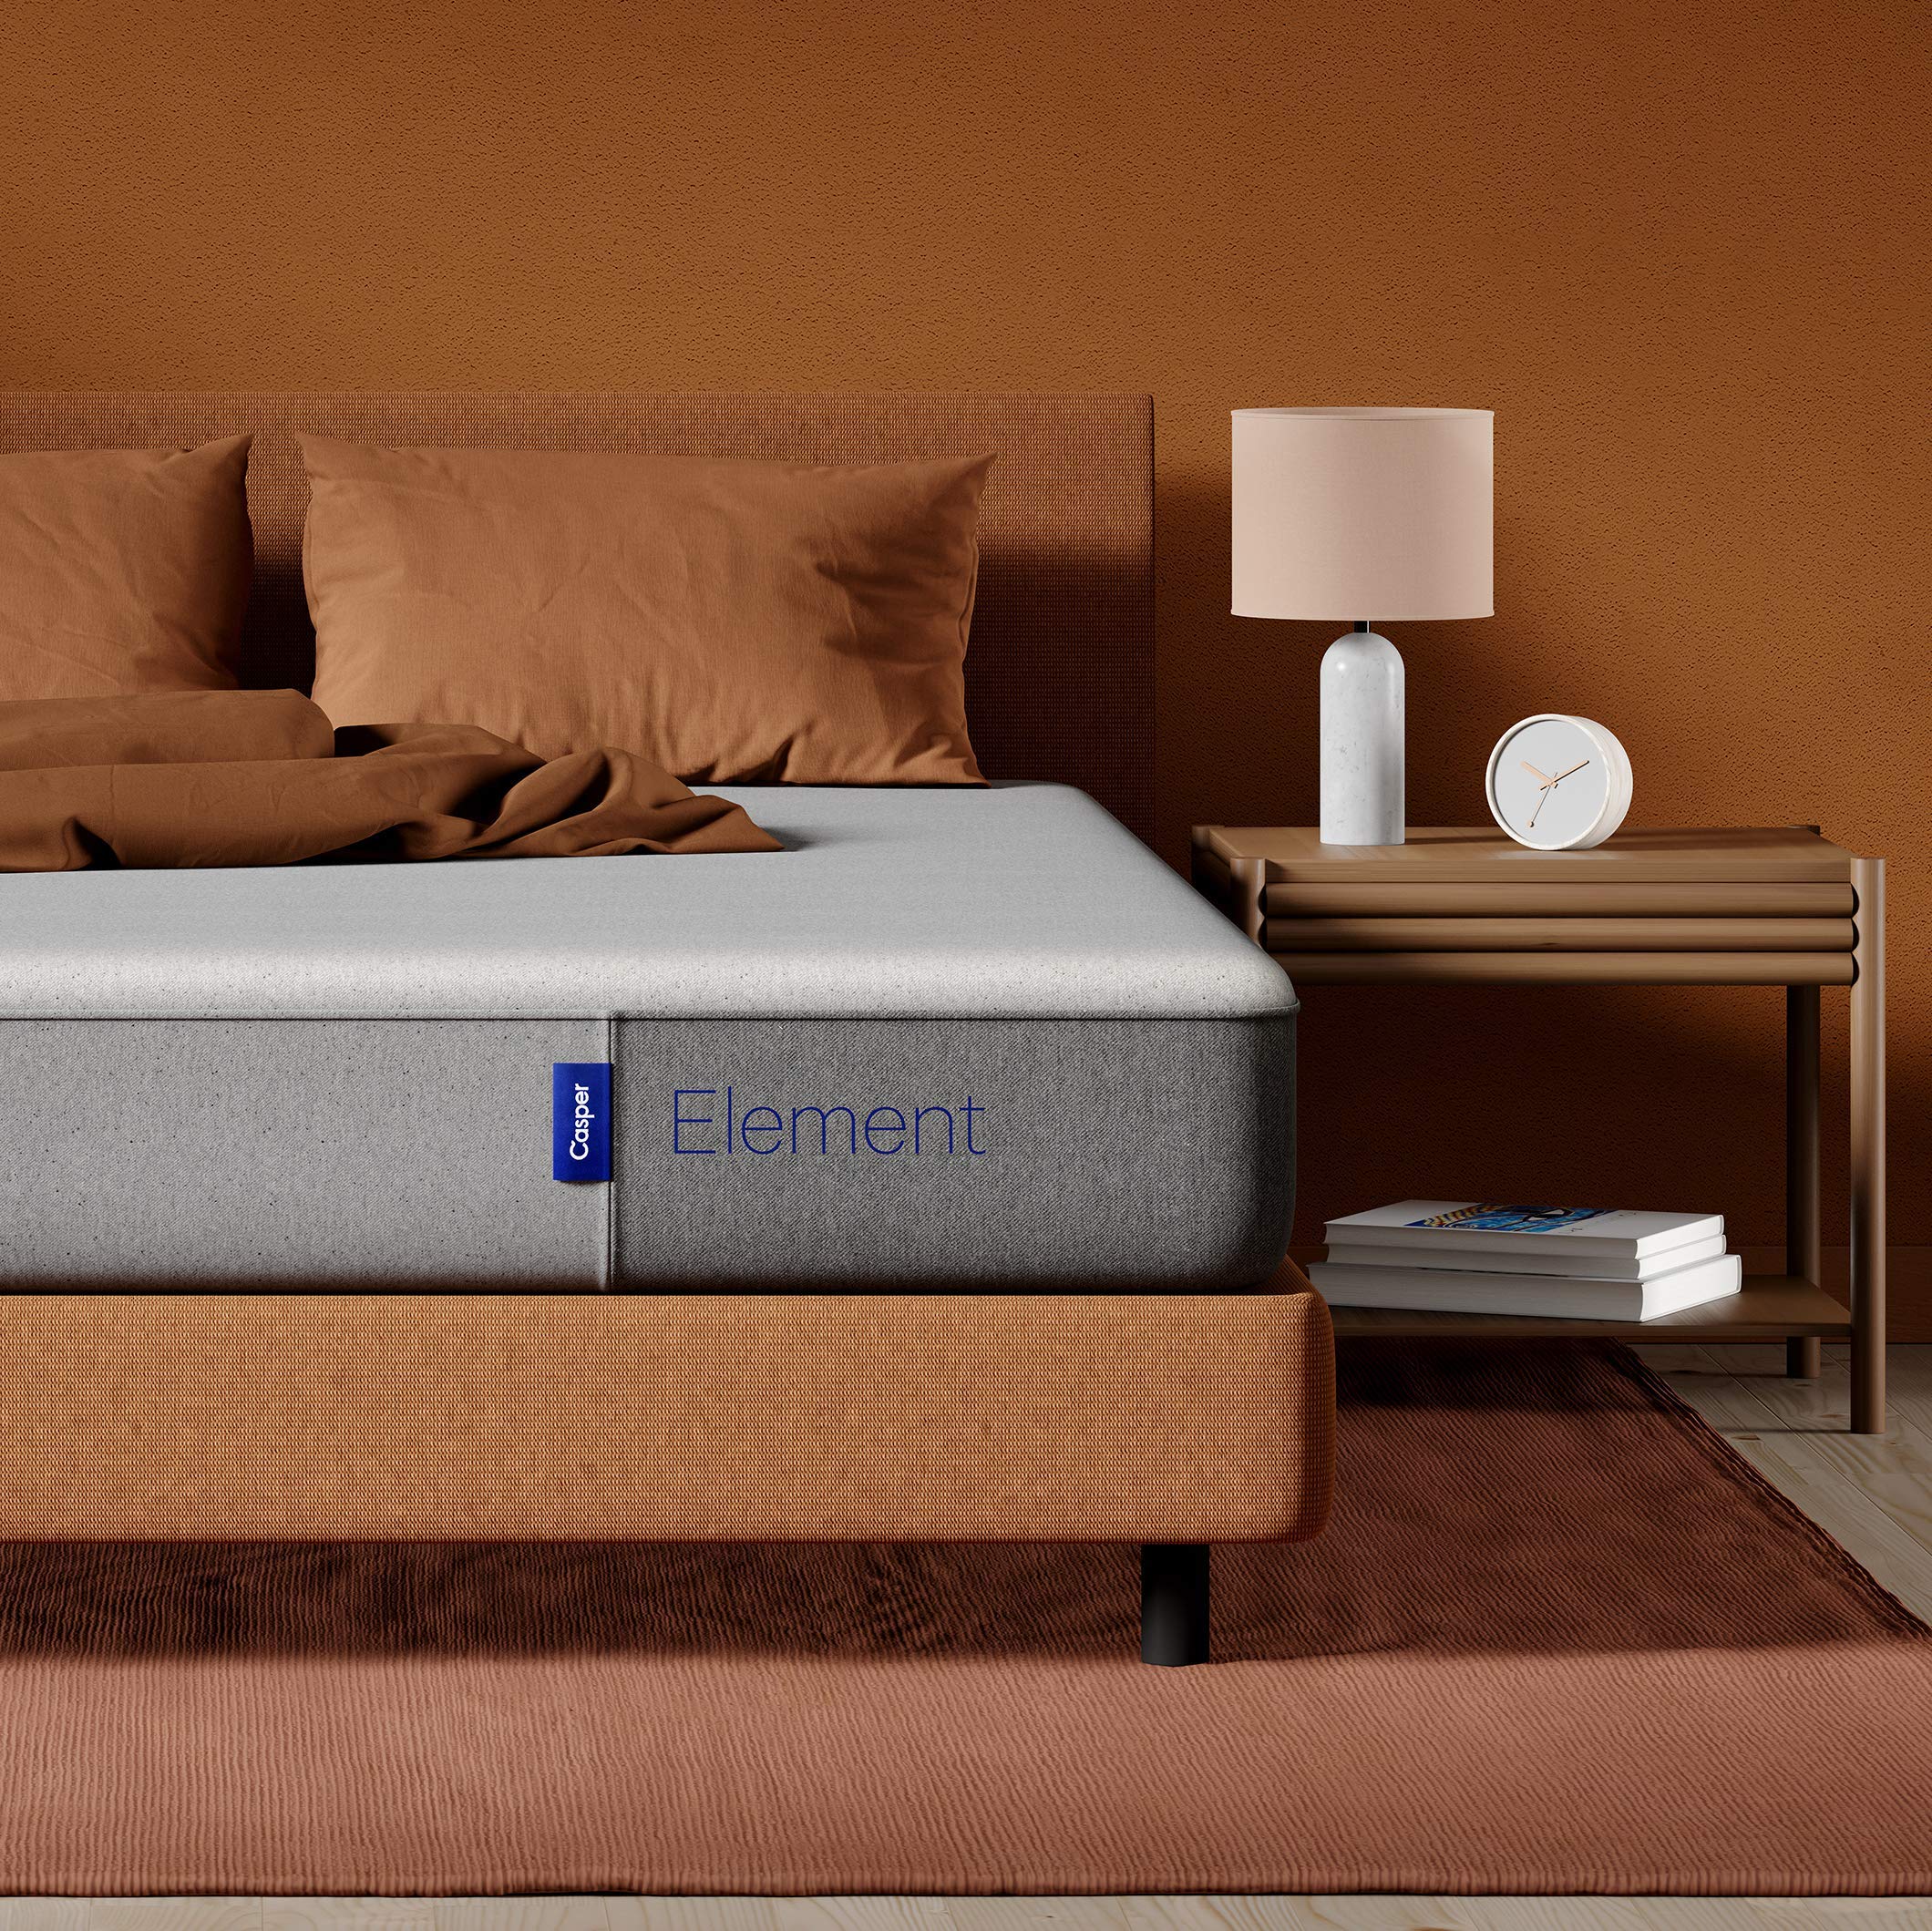 Ikea Markerad Virgil Abloh dagseng/daybed